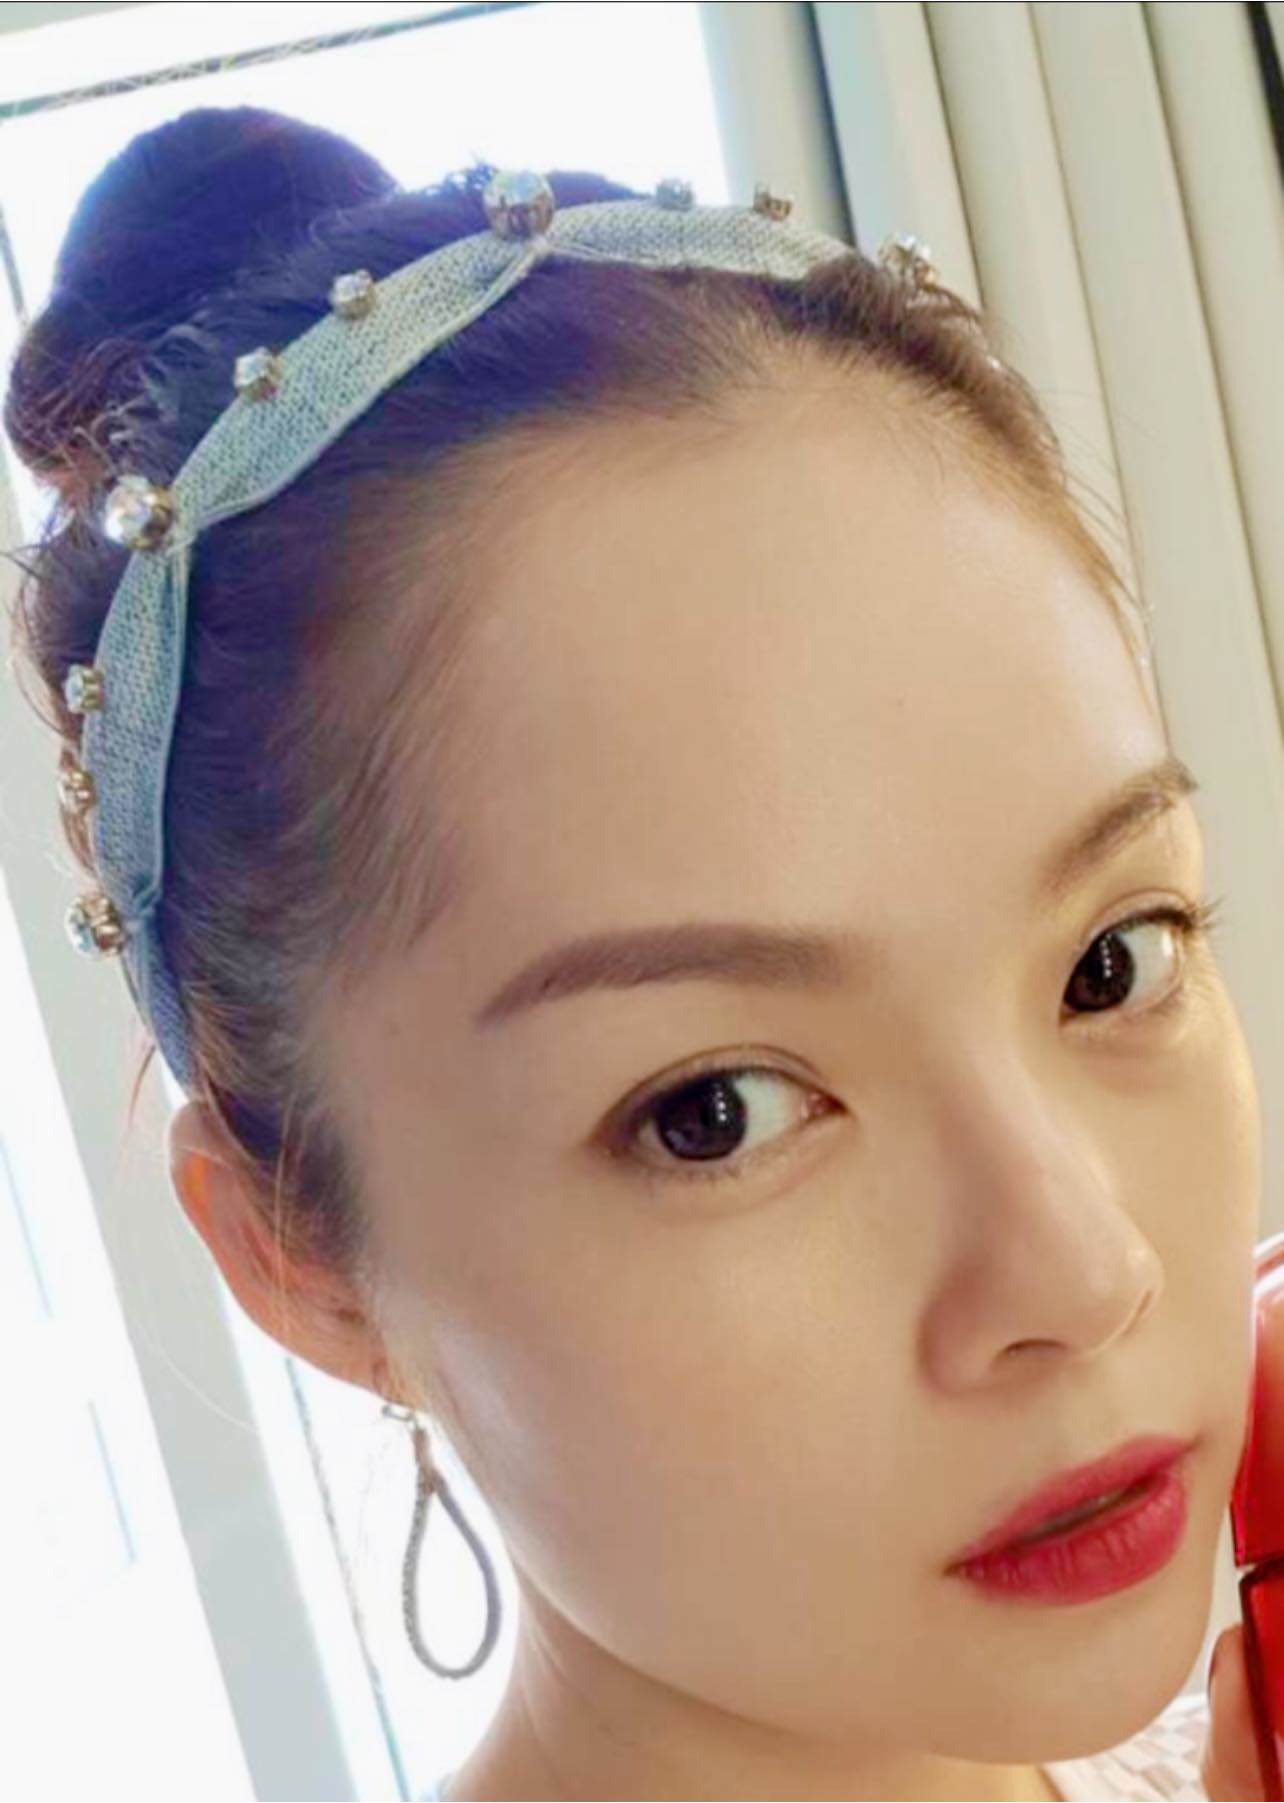 Trước scandal nợ 6 tỷ, Dương Cẩm Lynh từng vào đến Chung Kết Hoa hậu Việt Nam, nhan sắc thiếu nữ gây thương nhớ - 11